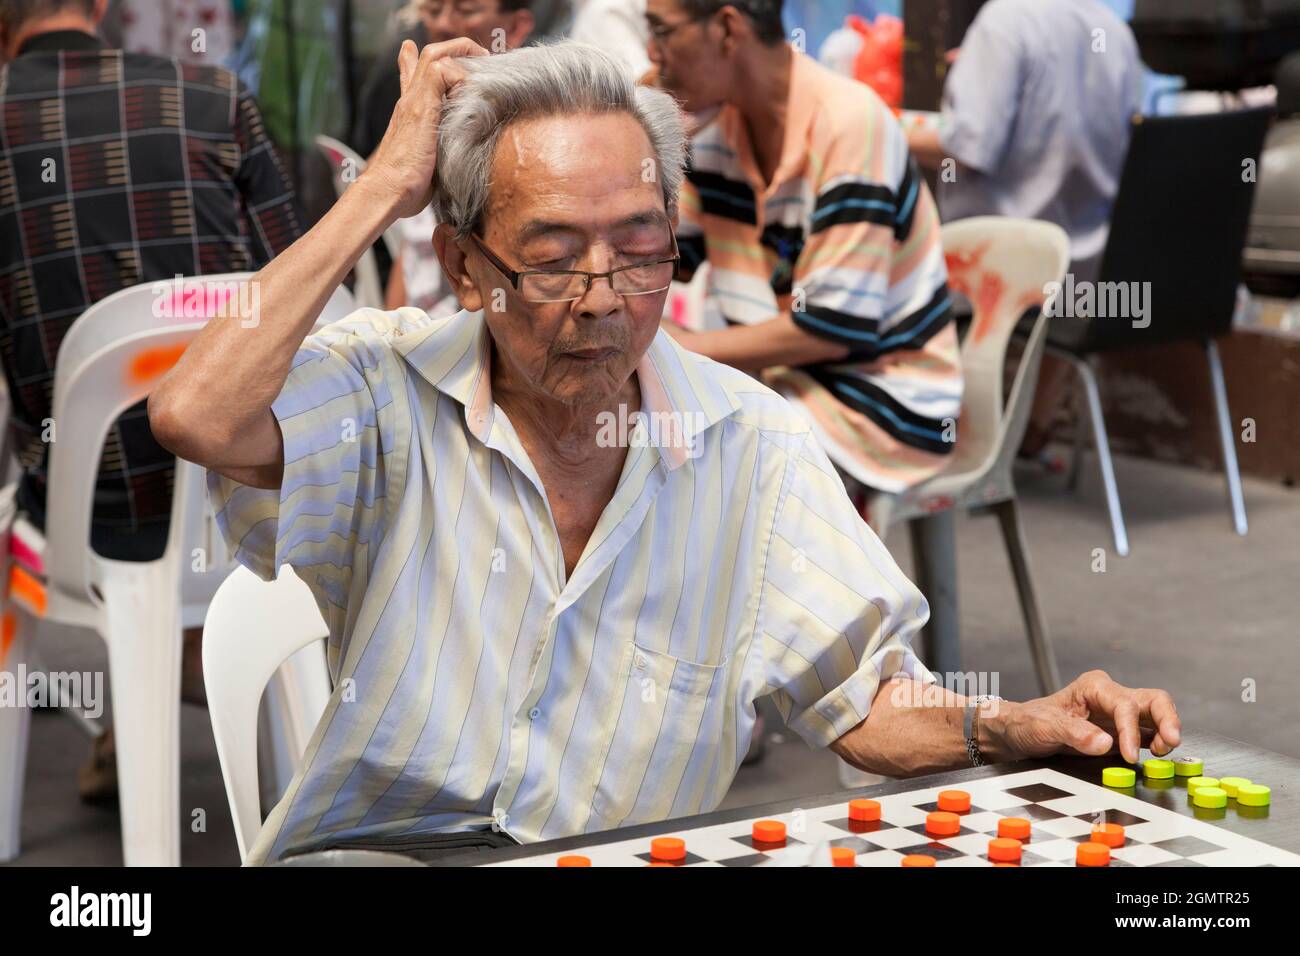 Chinatown, Singapour - 1er avril 2011 l'homme fumeur s'est concentré sur son jeu de dames dans cette place ouverte et bruyante du centre de Chinatown à Singapour Banque D'Images